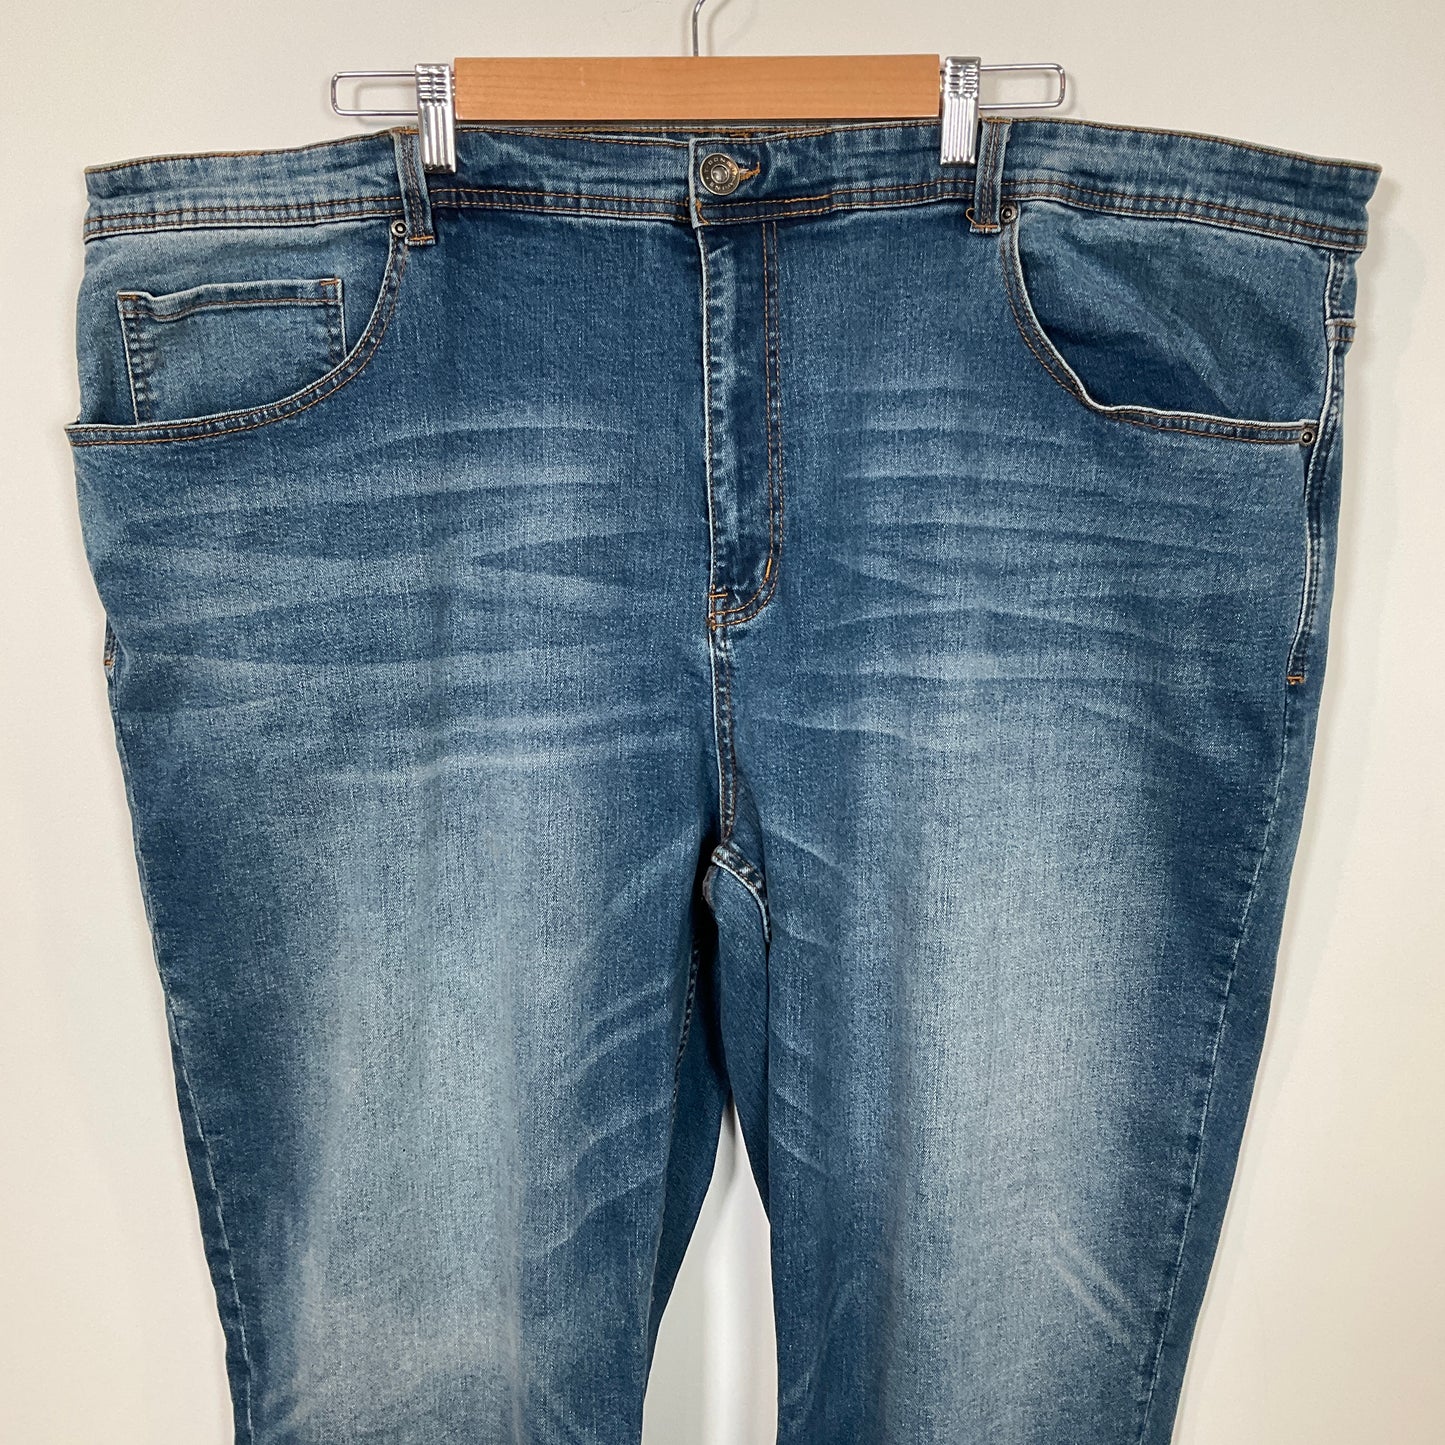 T-Bone - Straight Cut Jeans